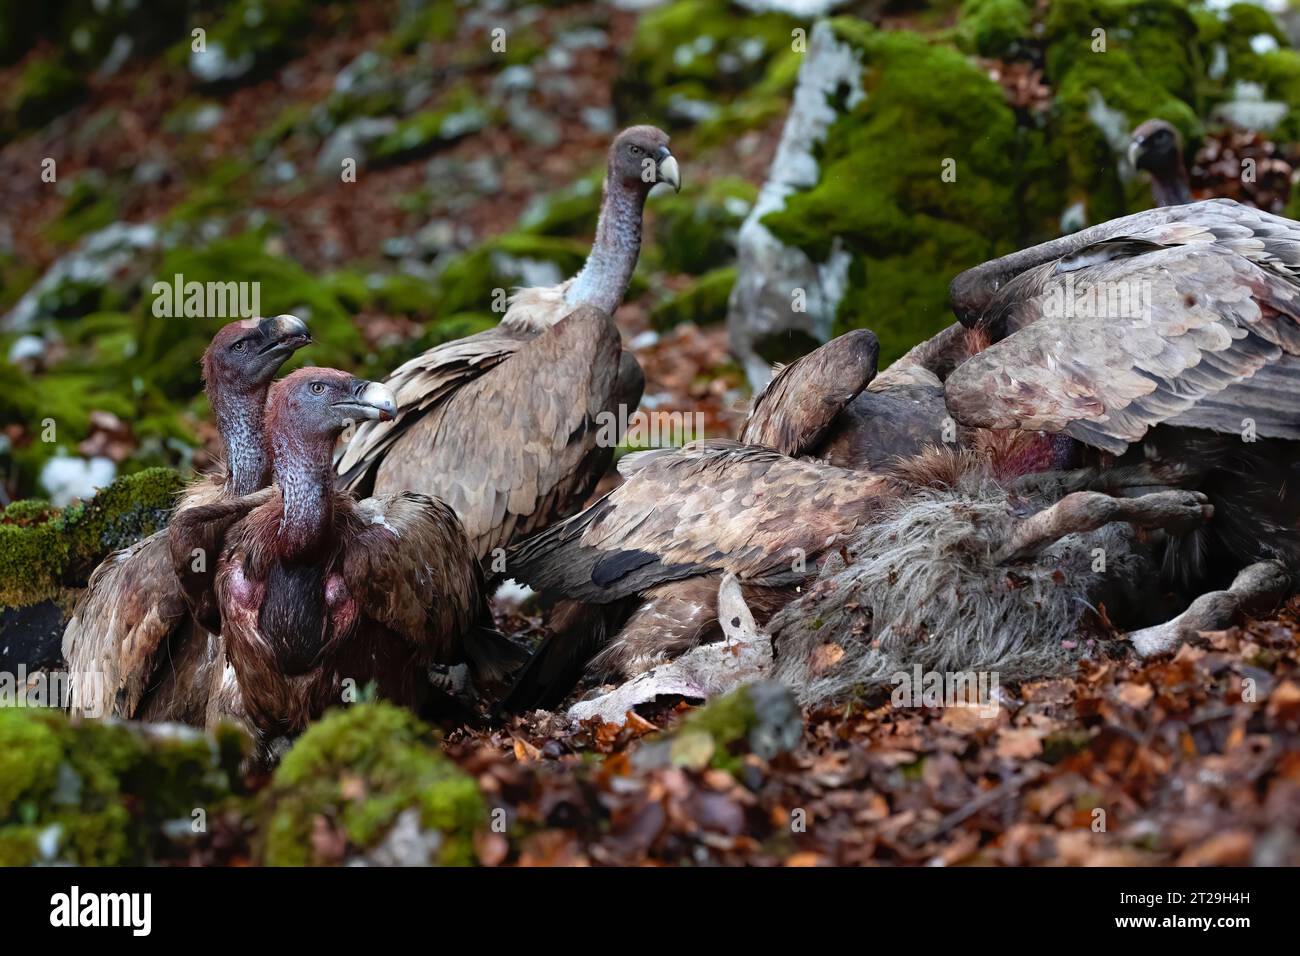 groupe de vautours dans la forêt avec leurs têtes pleines de sang après s'être nourris d'un mouton tombé. mangeurs de charognes, oiseaux de proie. horizontal et copie spa Banque D'Images